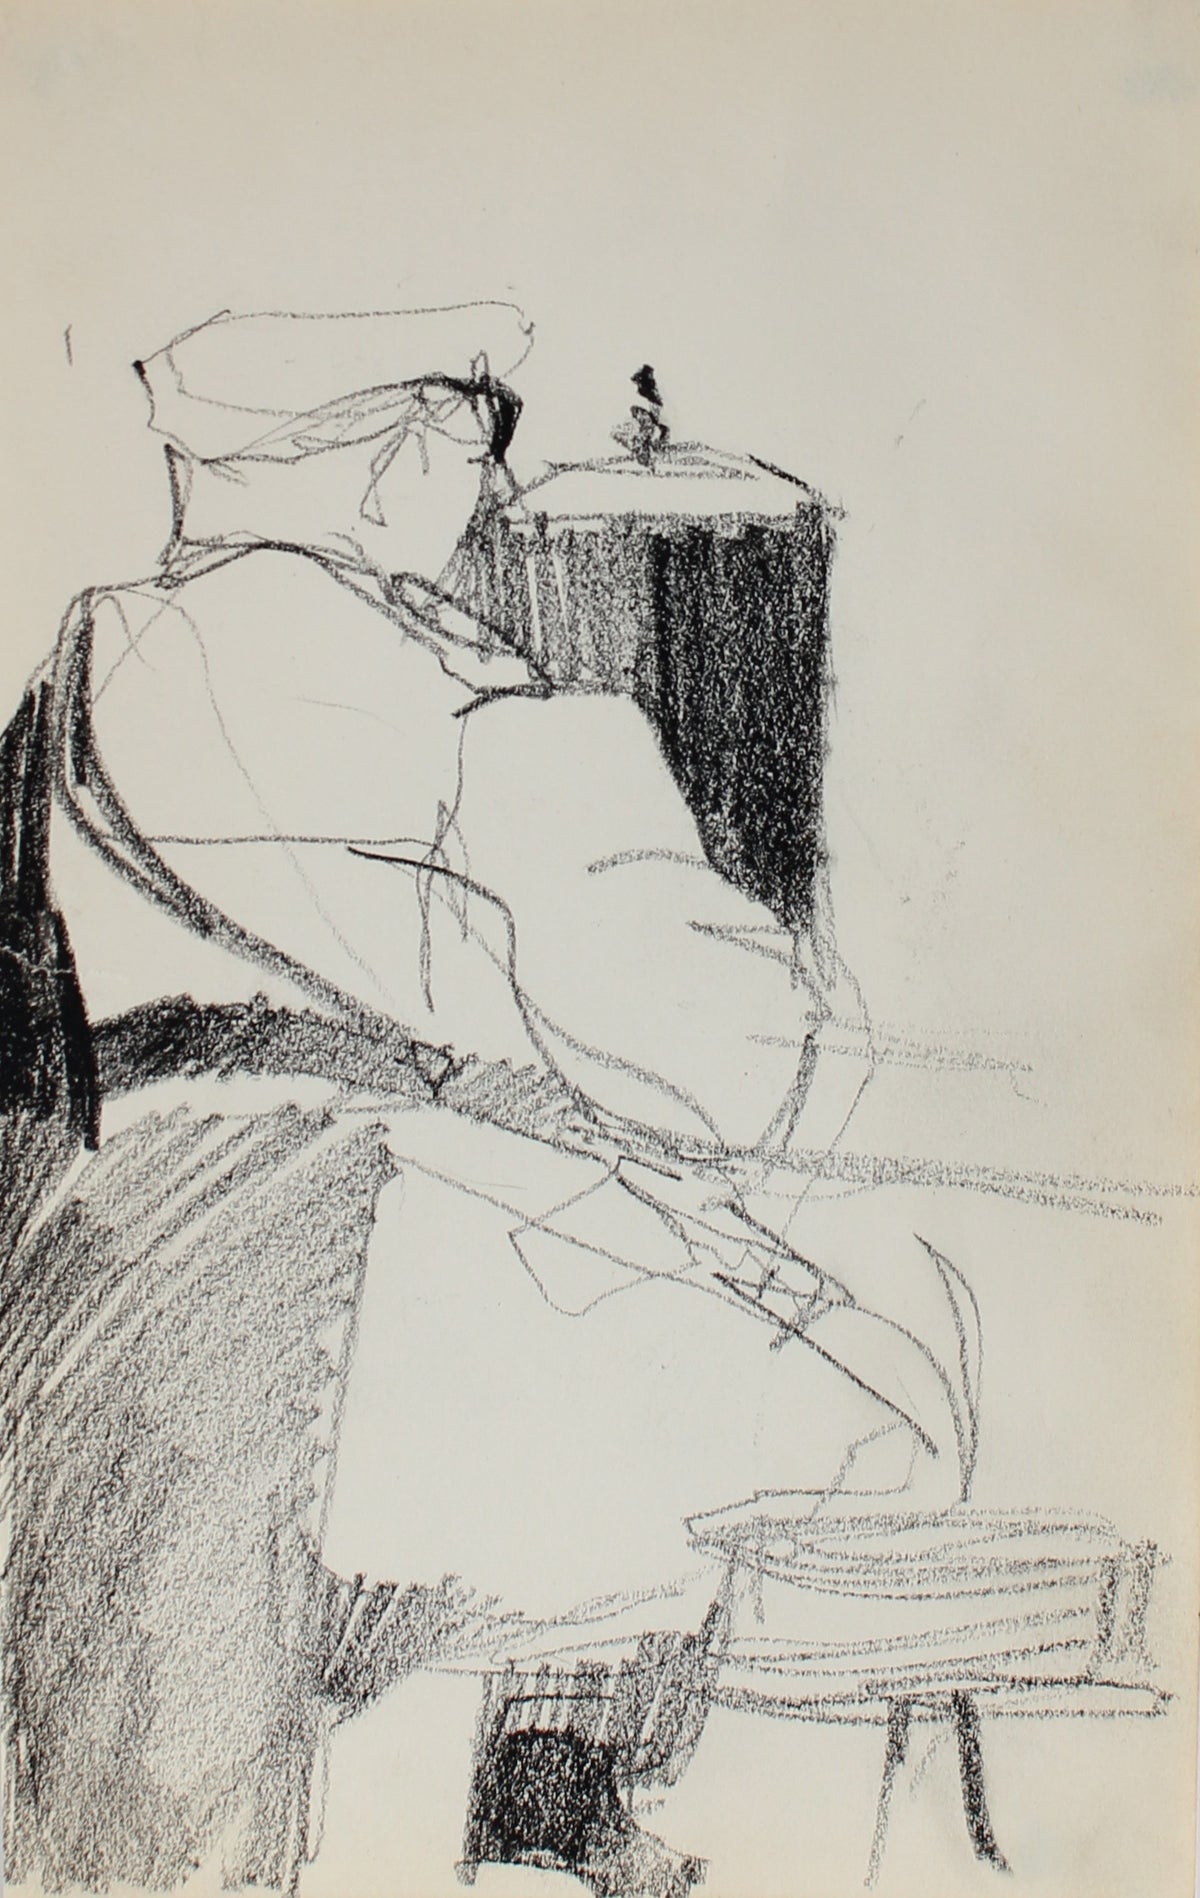 Petite New York Sketch&lt;br&gt;Charcoal, 1950-60s&lt;br&gt;&lt;br&gt;#0289